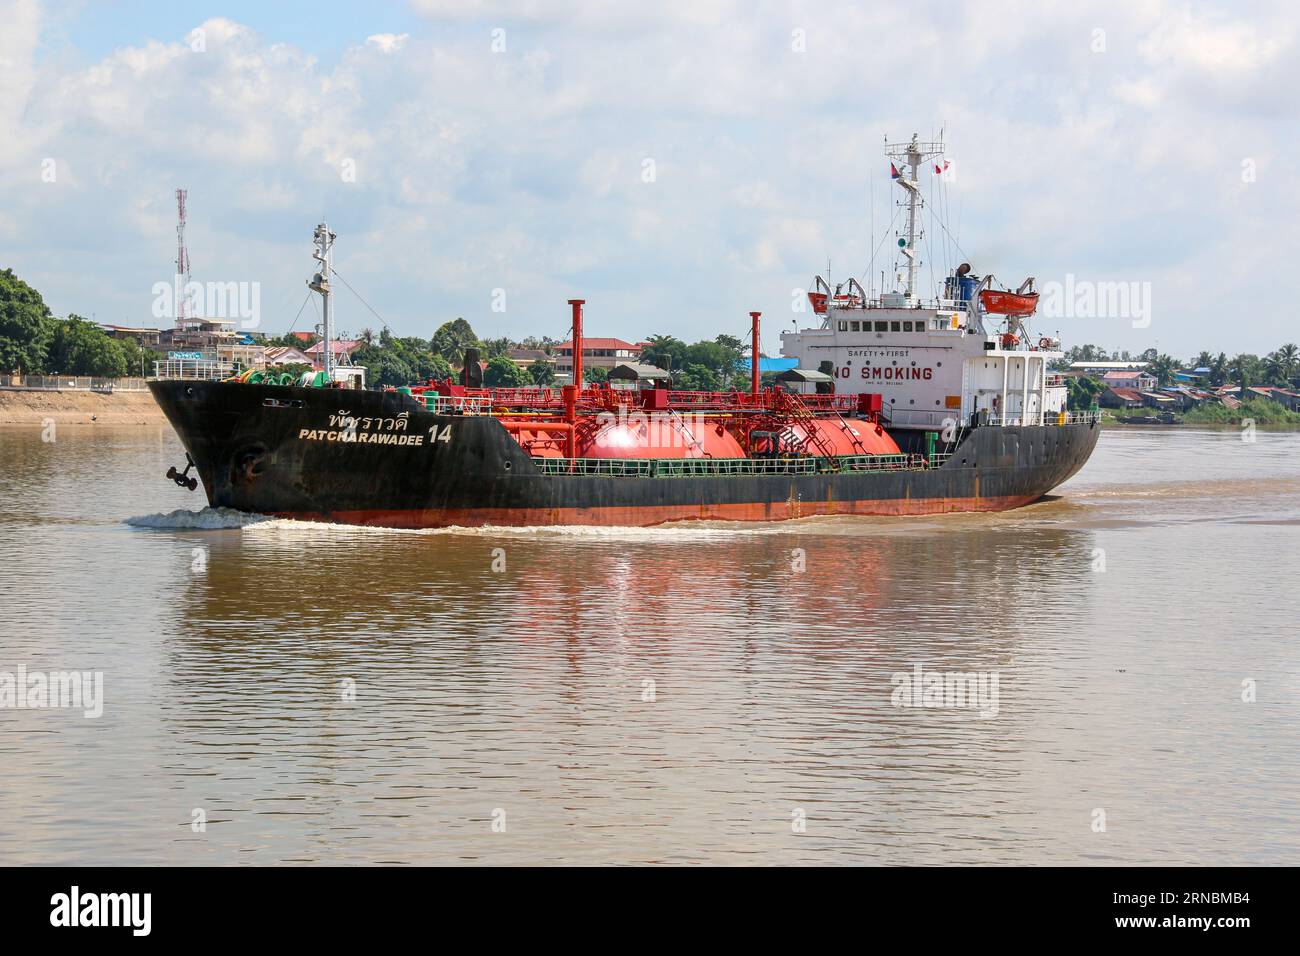 Autocisterna GPL Patcharawadee 14 in navigazione sulle acque del fiume Mekong, Vietnam. Vettore costiero tailandese di gas liquefatto che naviga verso tutti i porti del sud-est asiatico Foto Stock